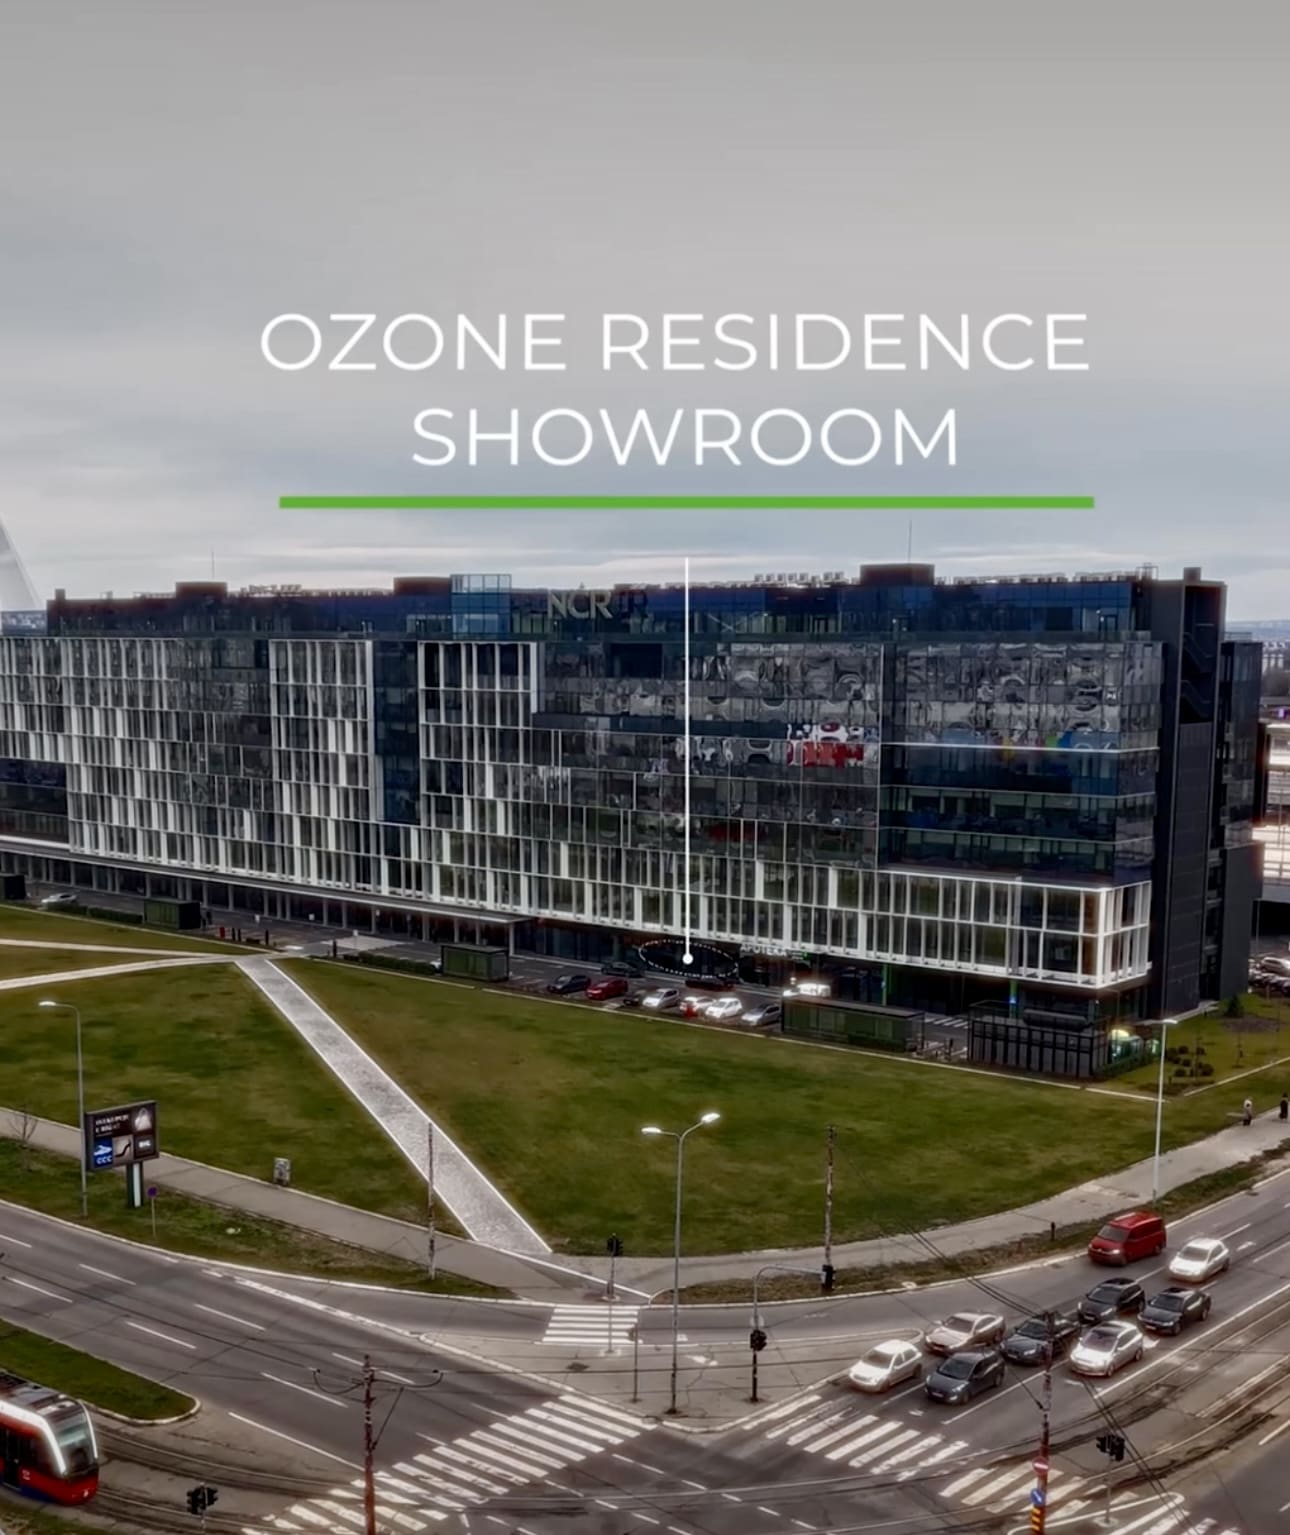 Ozone residence